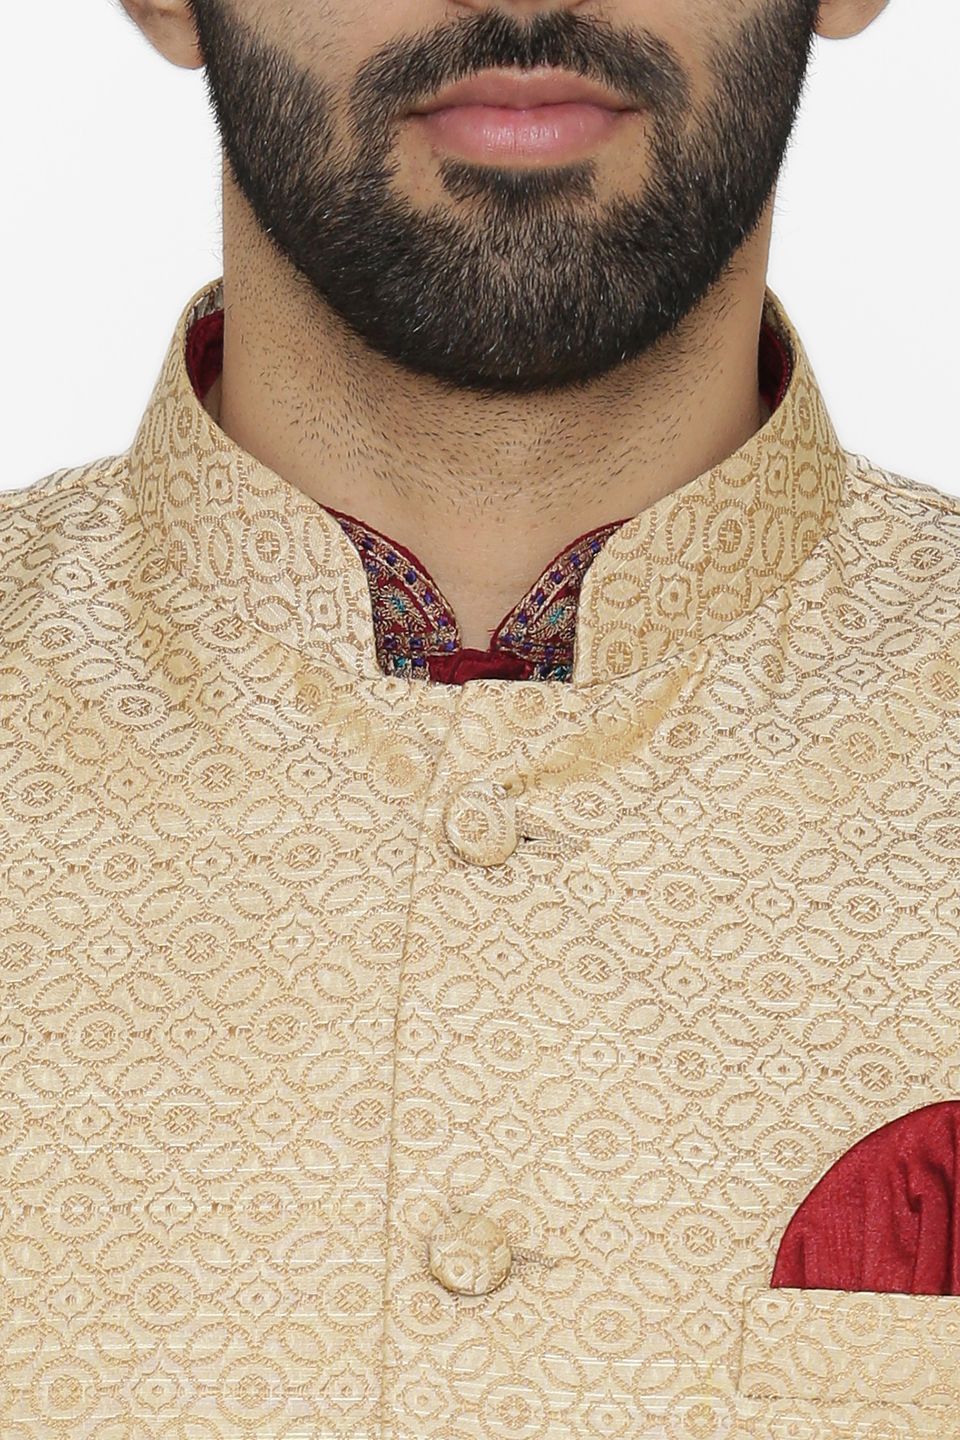 Banarasi Art Silk Cotton Blend Beige Nehru Jacket